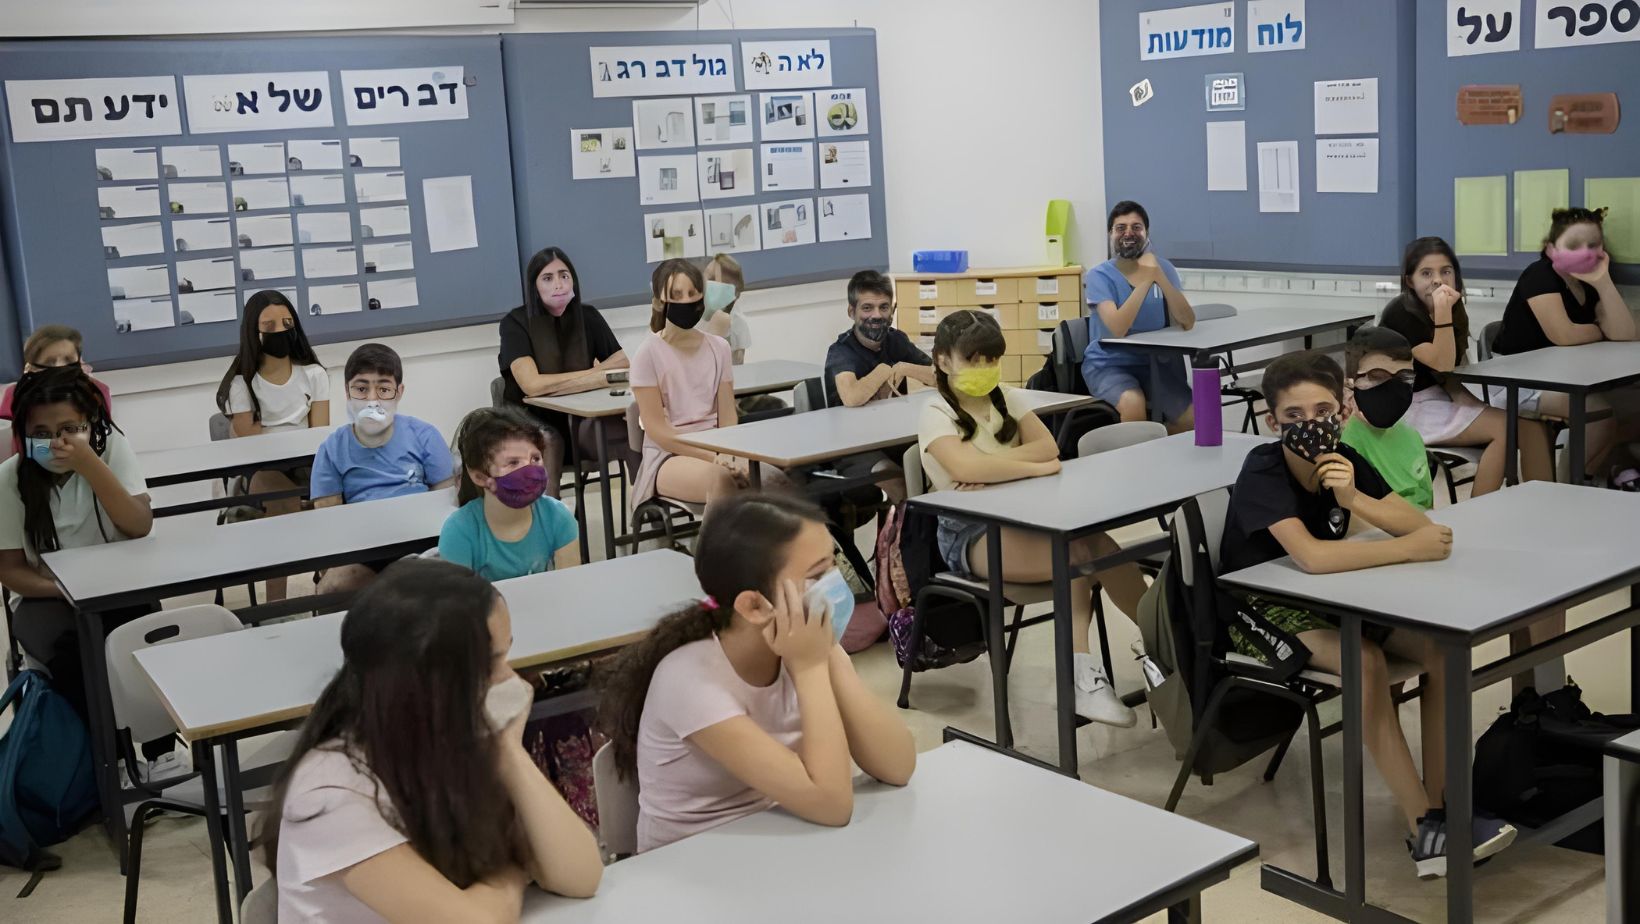 إسرائيل تخشى الهجمات الإيرانية وتقرر إغلاق المدارس